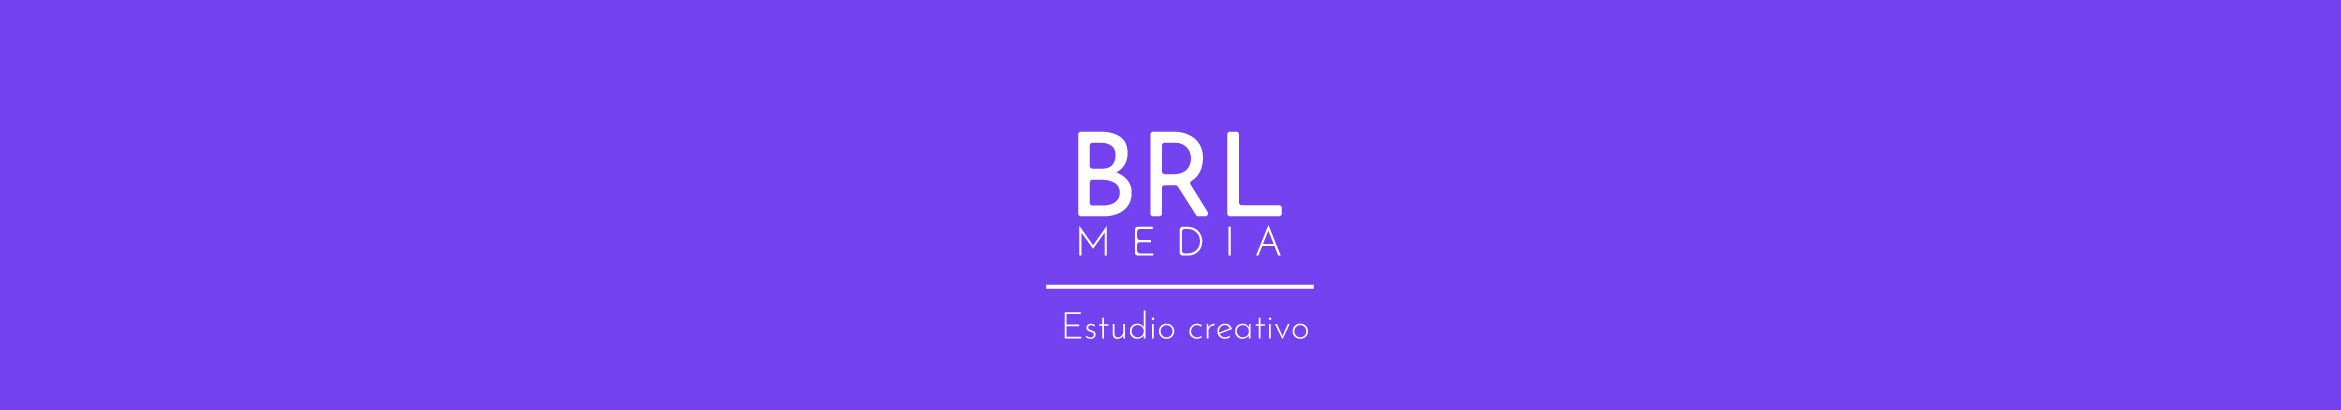 BRL Media's profile banner